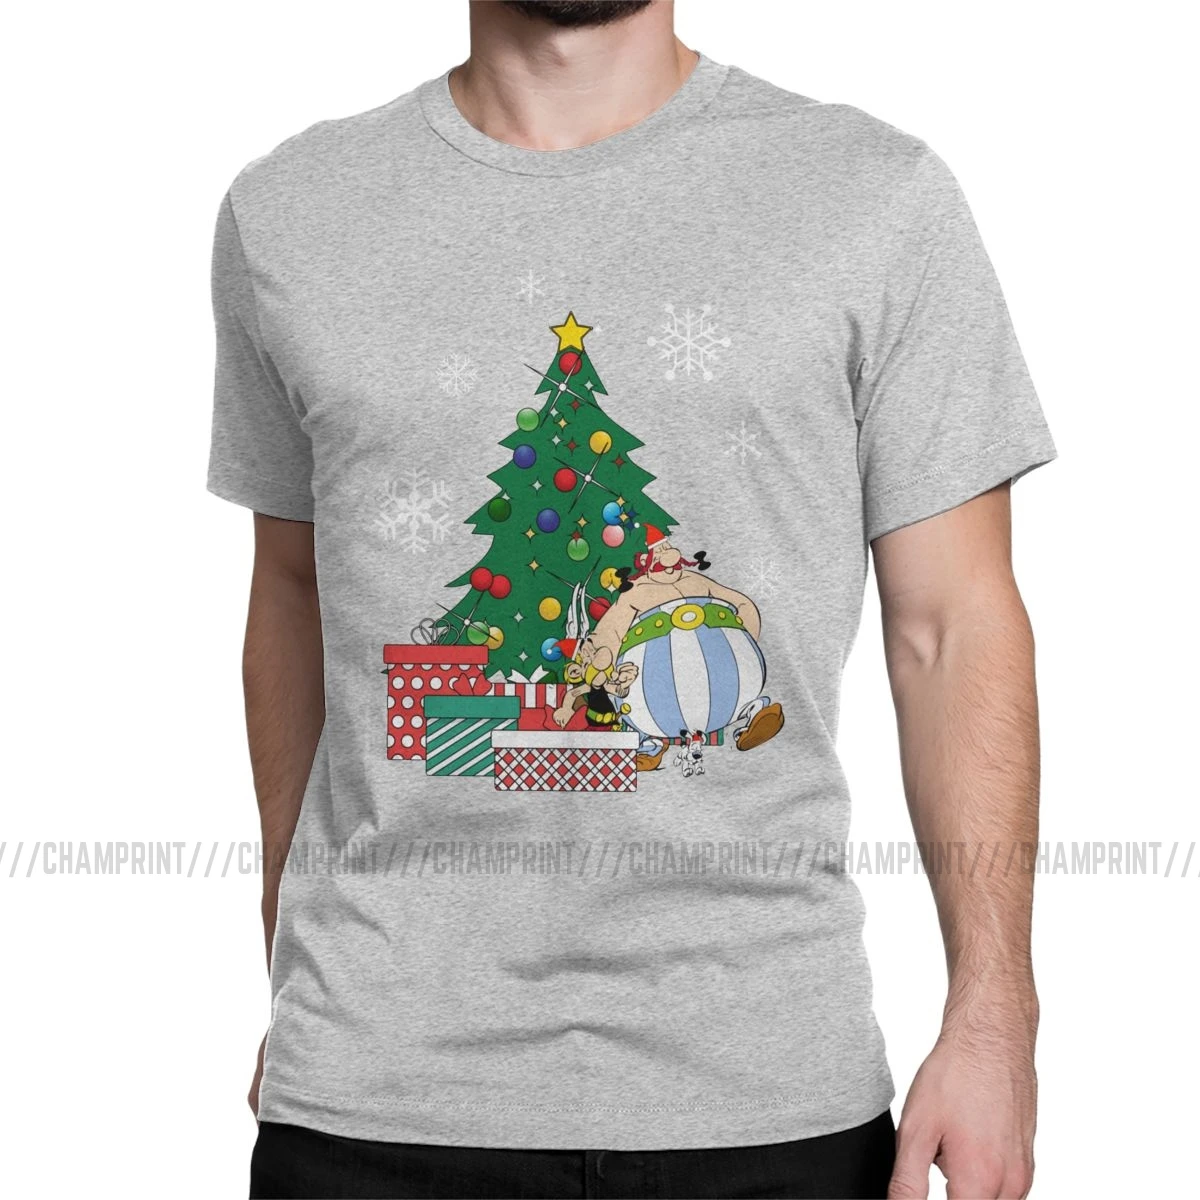 Мужская футболка Астерикс и Обеликс вокруг рождественской елки, хлопковые топы Getafix Dogmatix, футболка с коротким рукавом, подарок на день рождения, футболки - Цвет: Серый